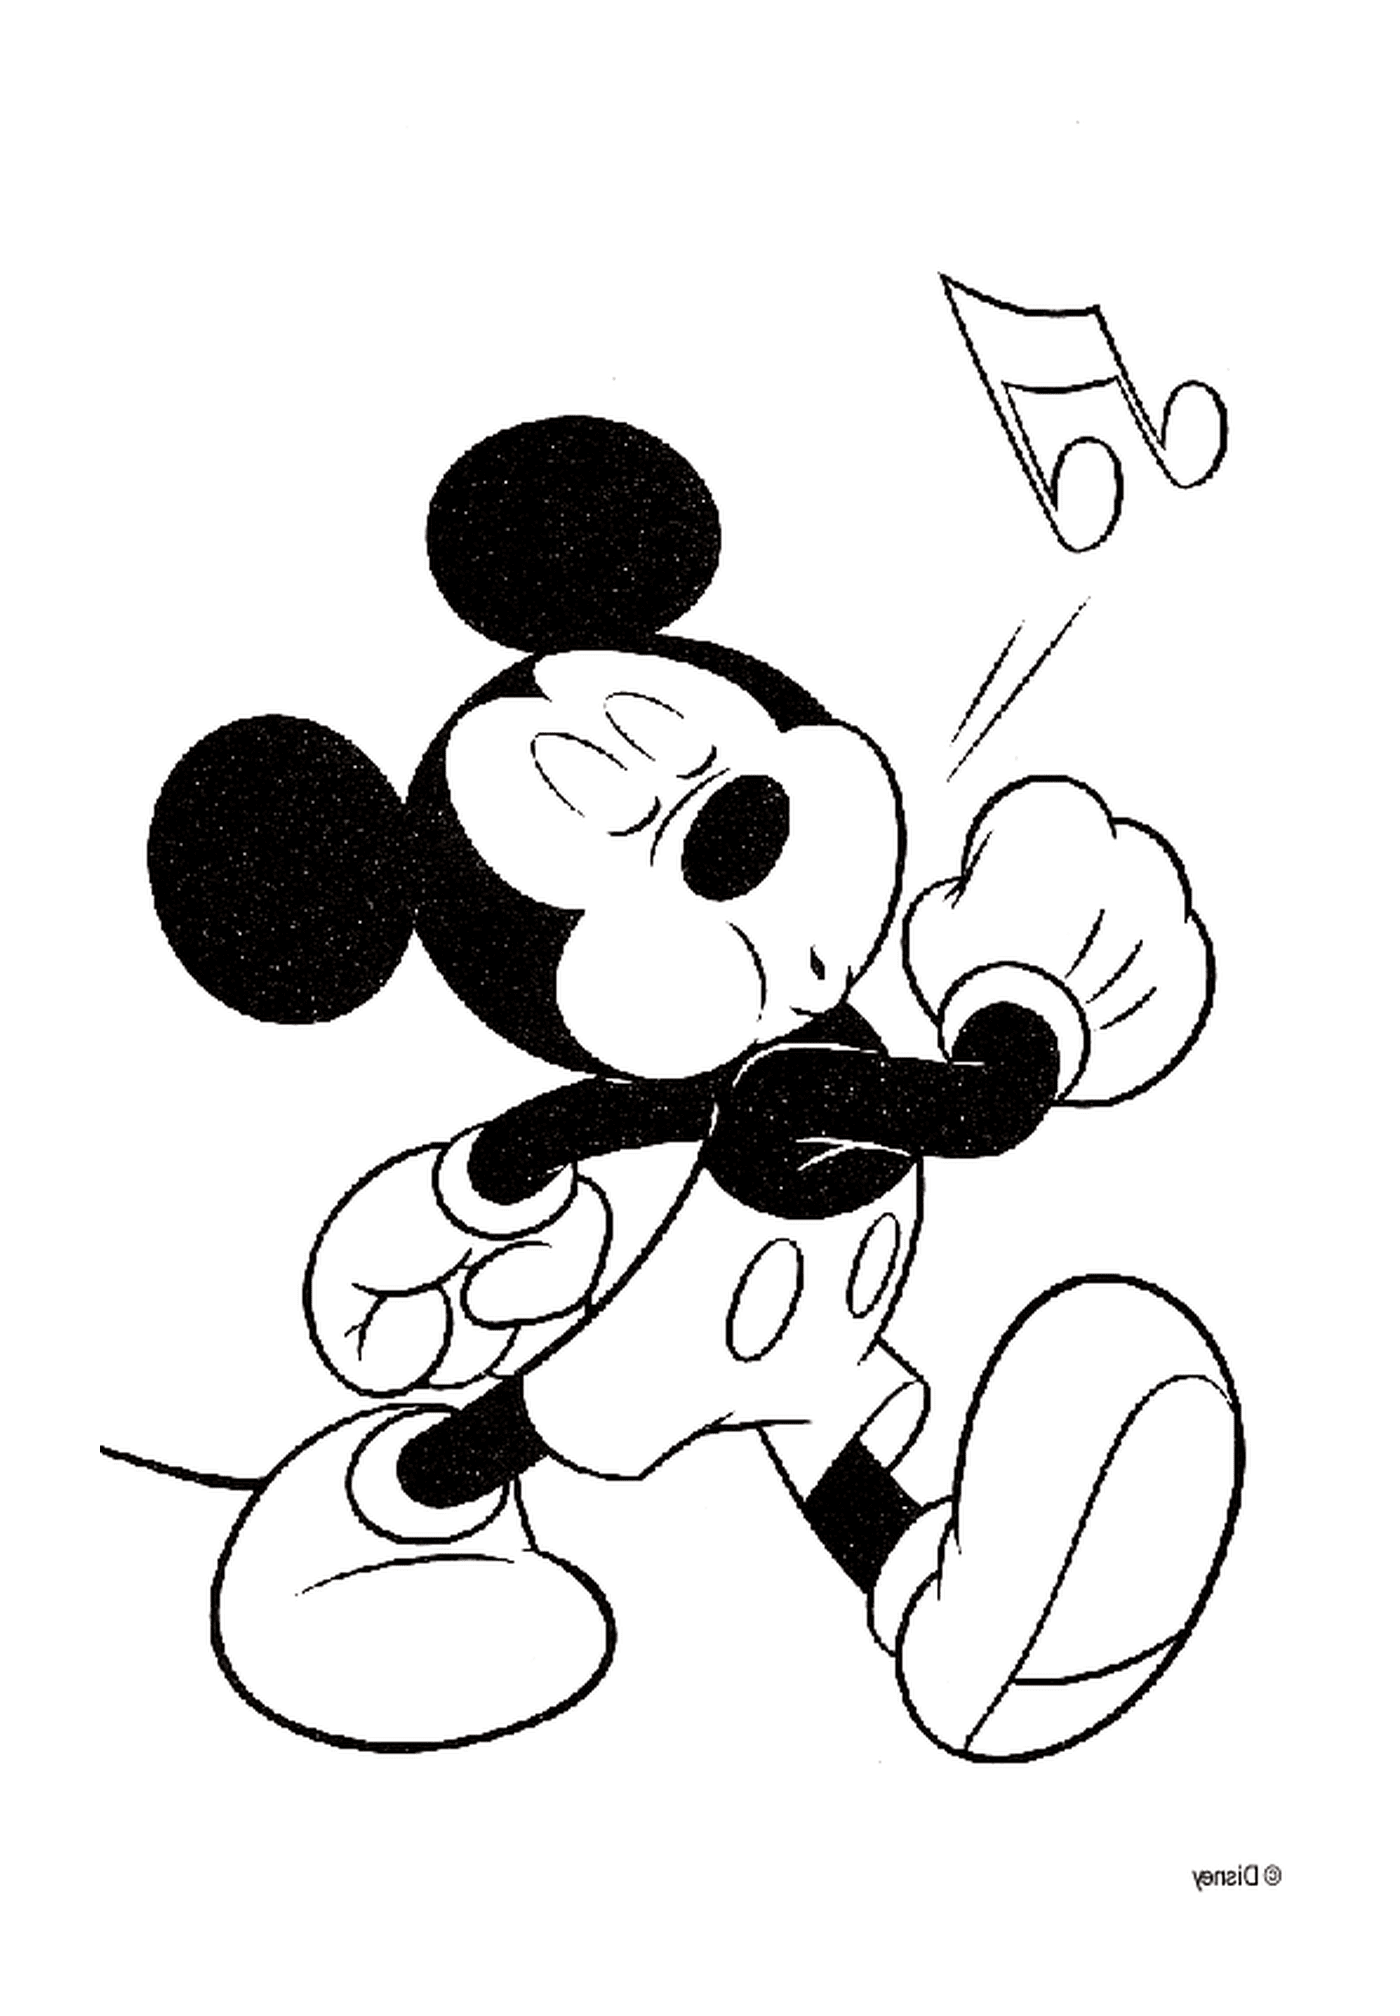  Zeichnung von Mickey's Pfeife 